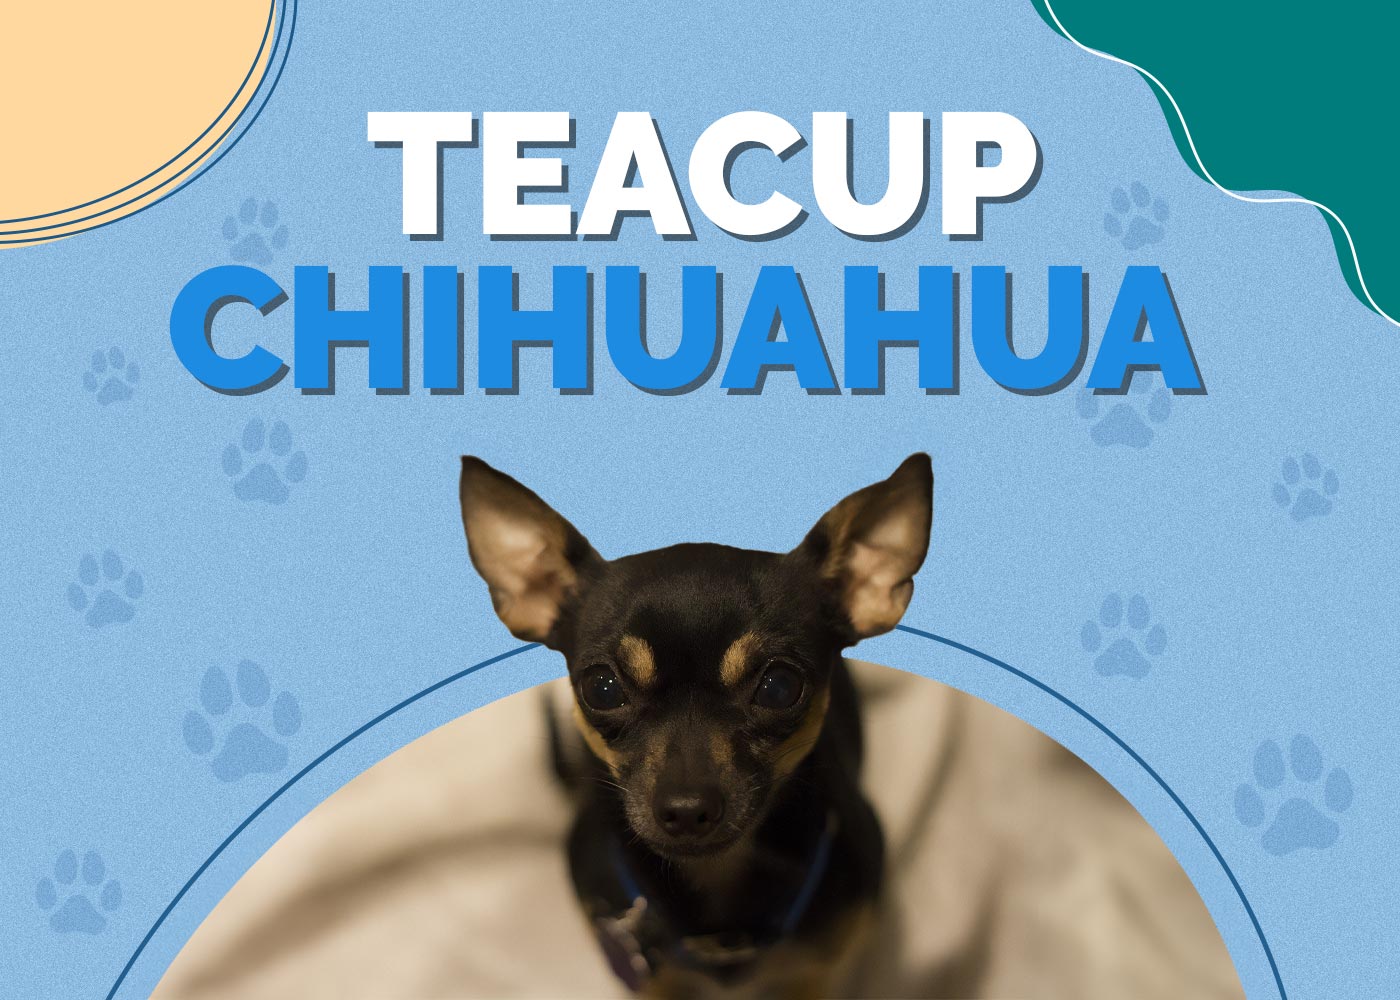 Teacup Chihuahua Dog